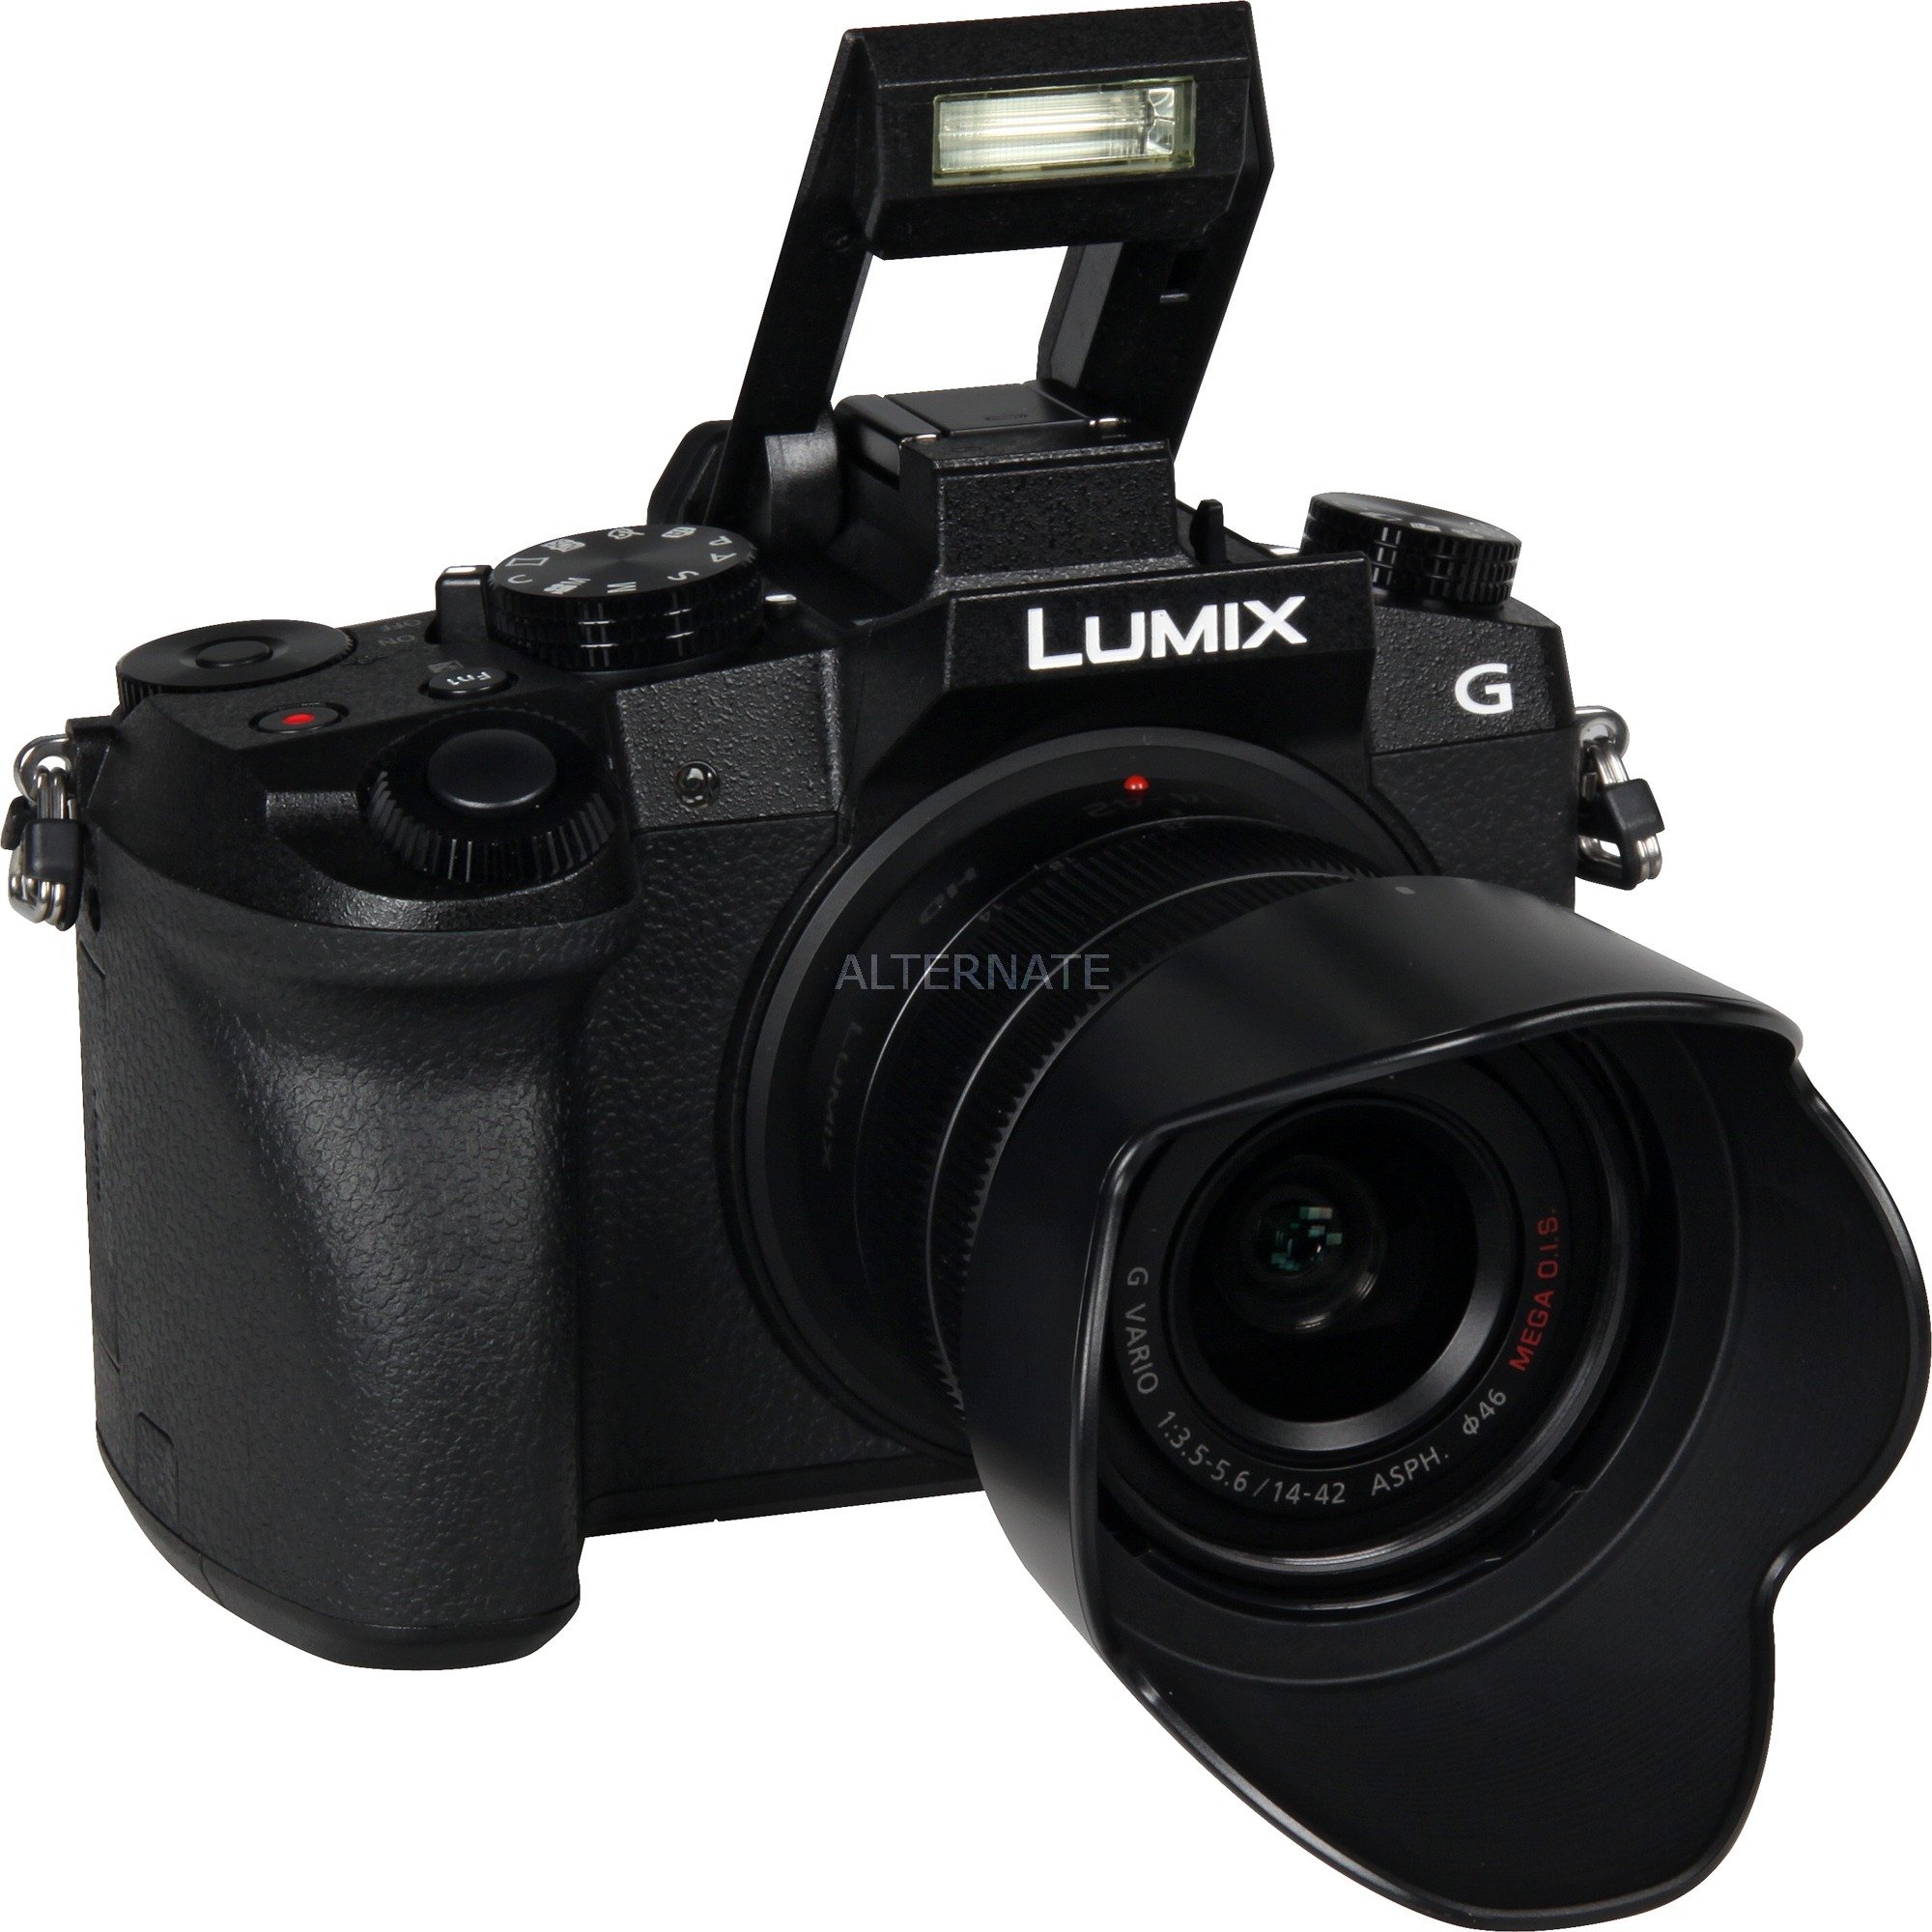 Lumix DMC-G7 Bezlusterkowiec 16 MP Live MOS 4592 x 3448 piksele Czarny, Cyfrowy aparat fotograficzny